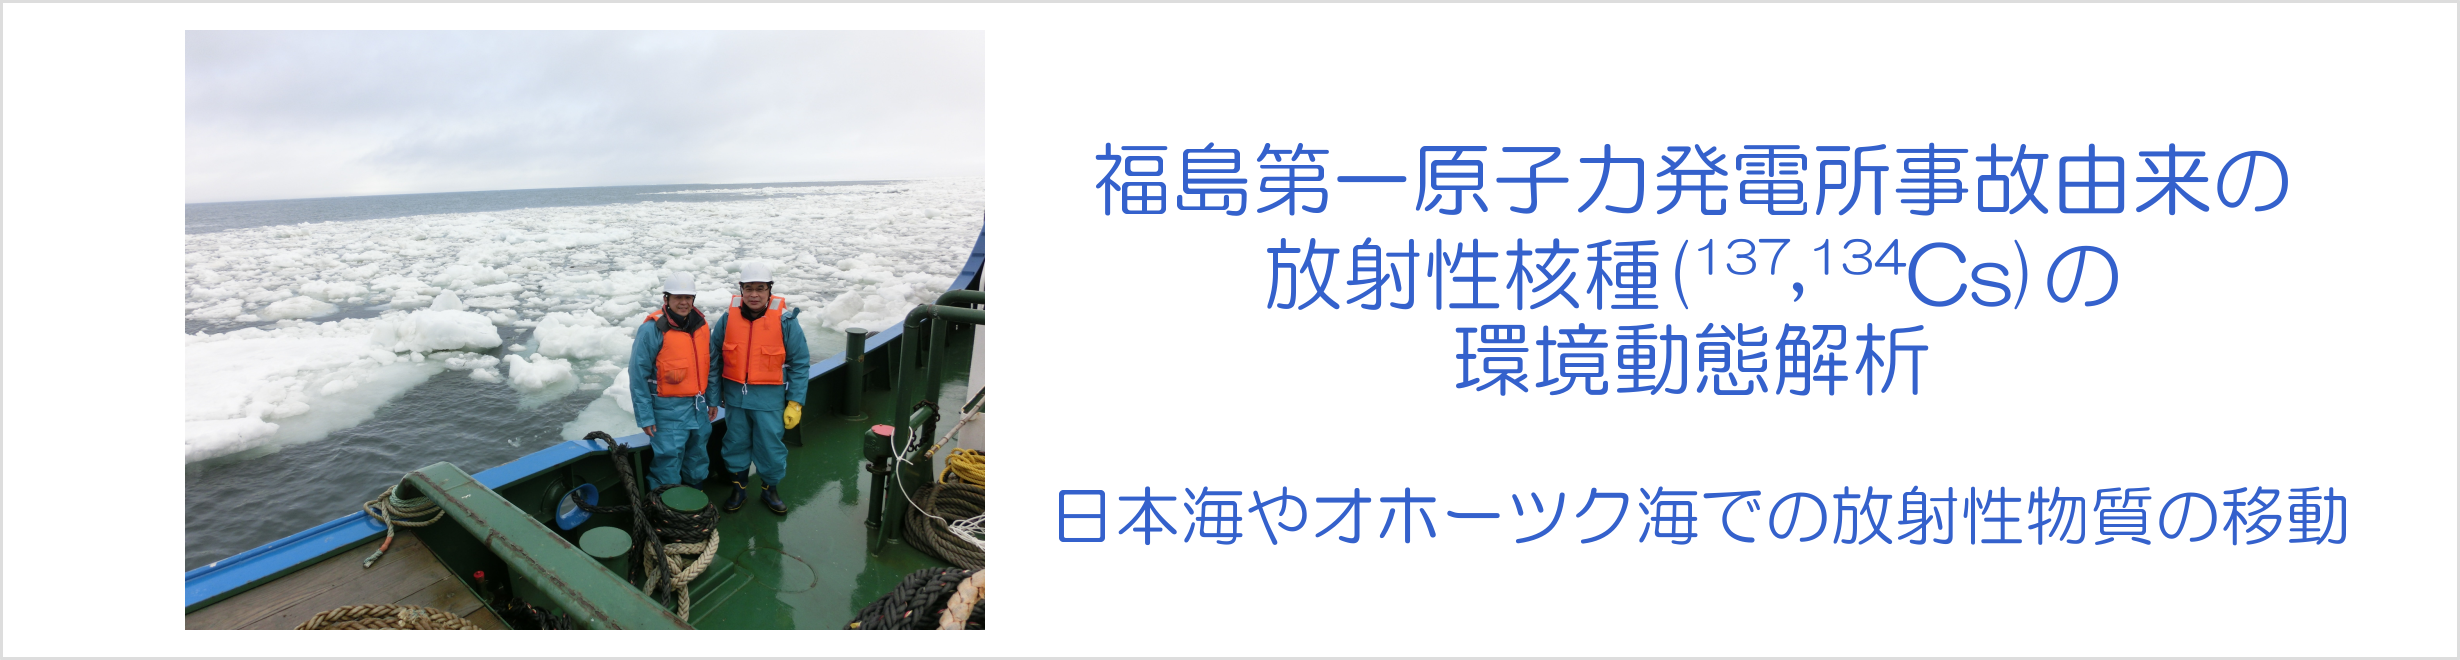 福島第一原子力発電所事故由来の放射性核種(137,134Cs)の環境動態解析-日本海やオホーツク海での放射性物質の移動